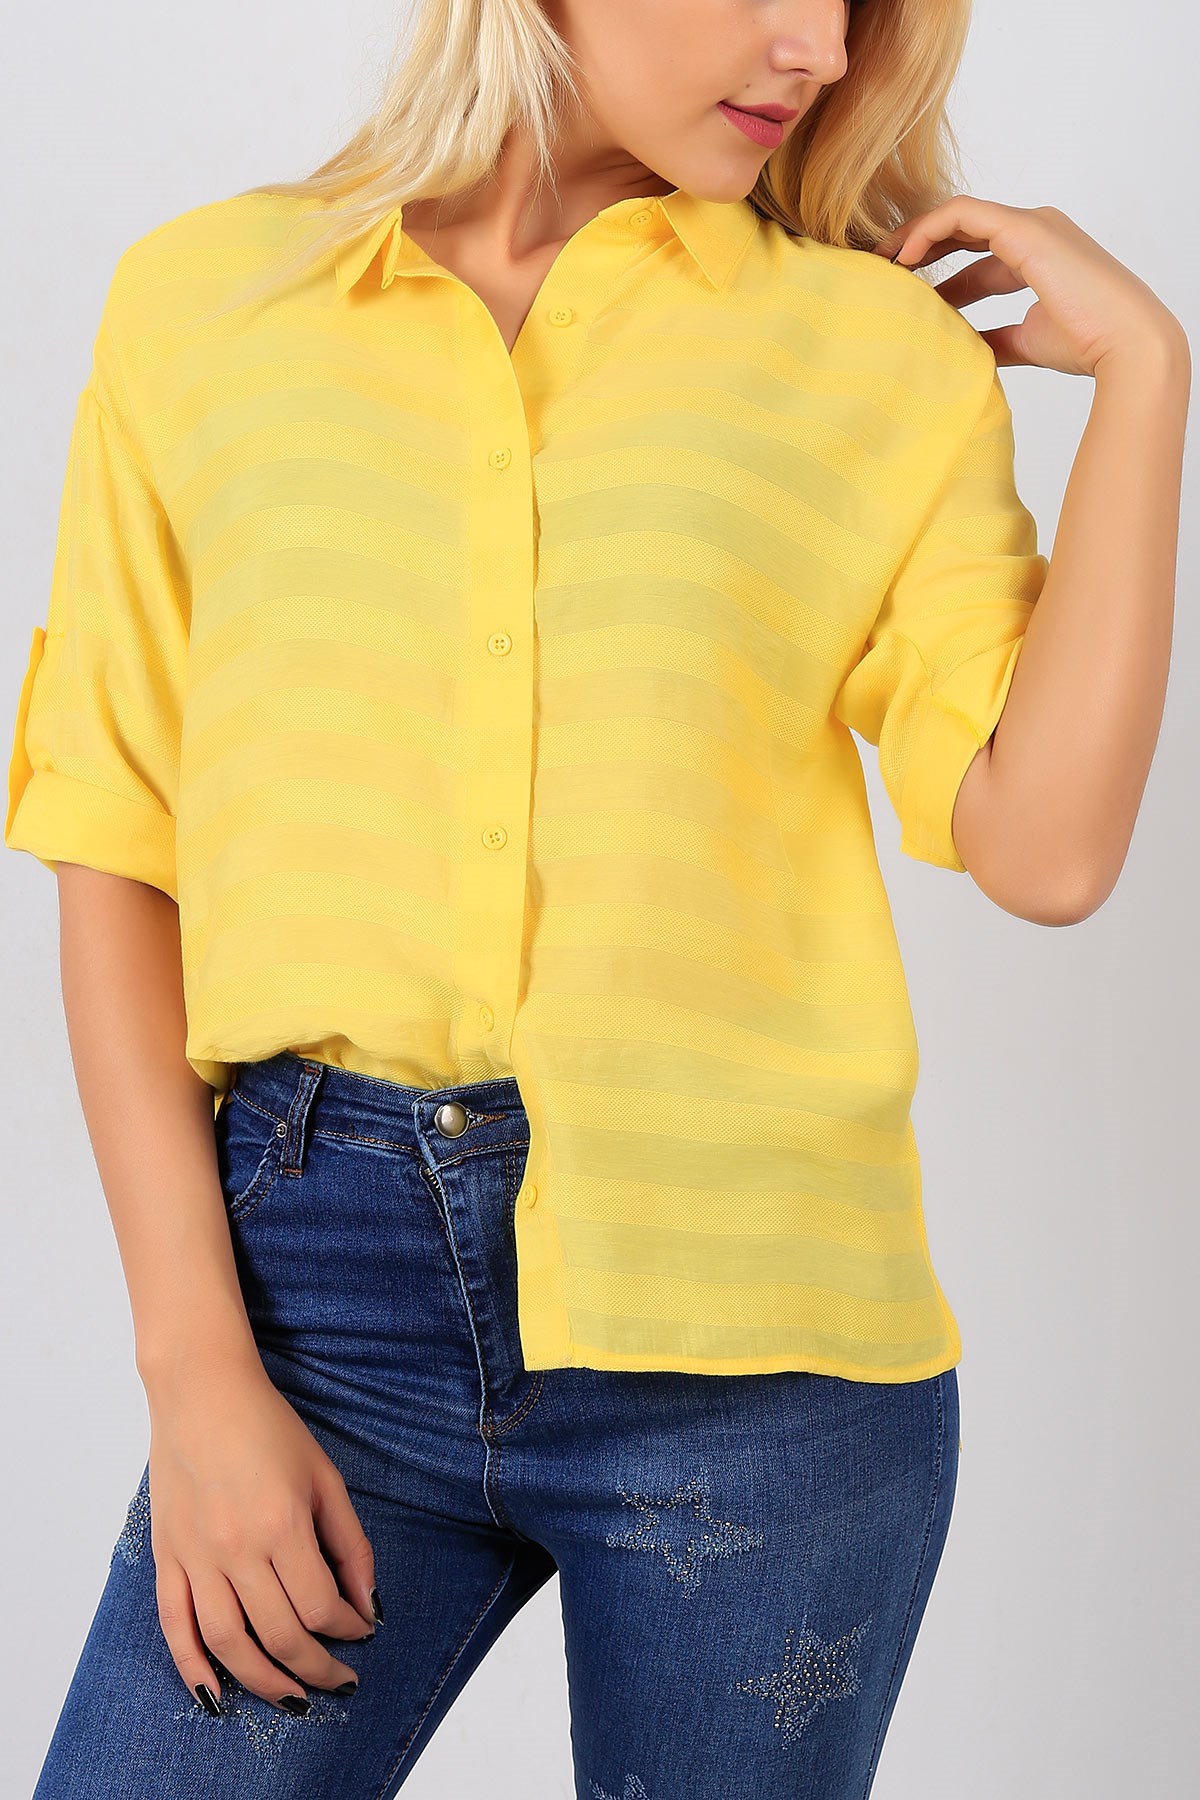 Çizgi Detaylı Sarı Salaş Bayan Gömlek 8502B